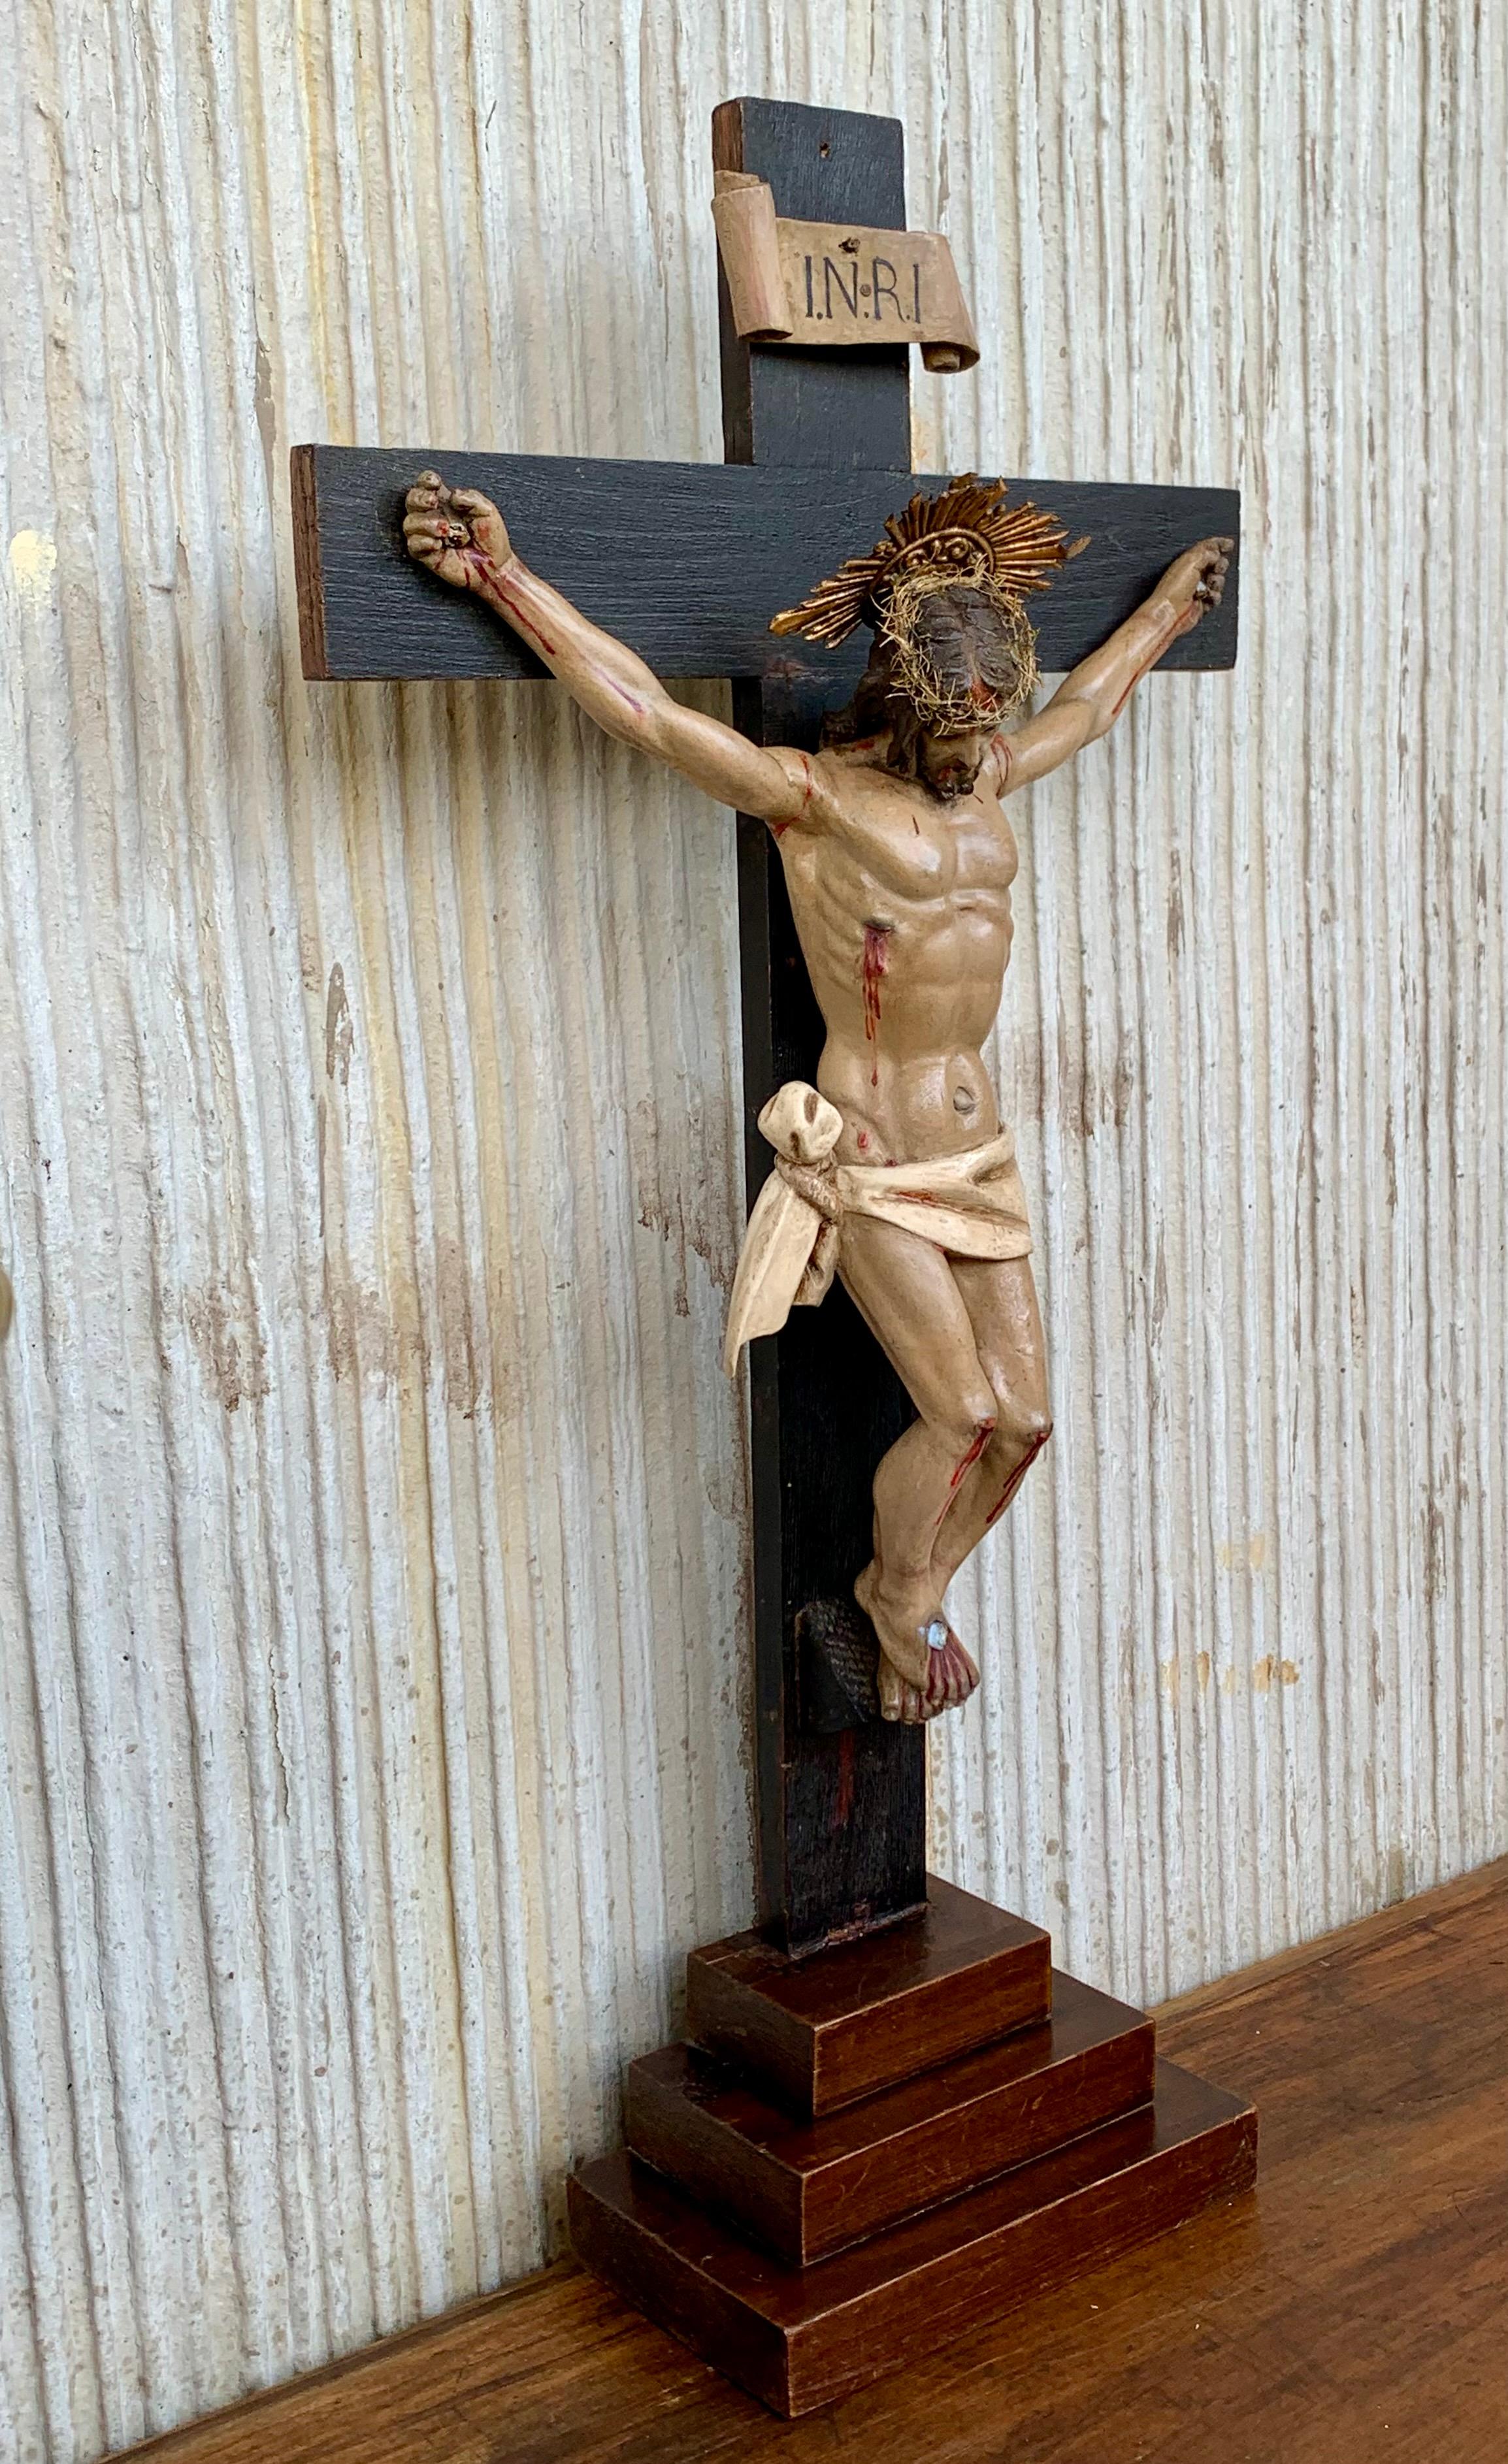 Kruzifix aus der Mitte des 18. Jahrhunderts mit einem geschnitzten Leichentuch oder Schleier, das Christus im Sockel darstellt. Dieses einzigartige und bemerkenswerte antike Kruzifix kann sowohl als Tisch- als auch als Wandkruzifix verwendet werden.